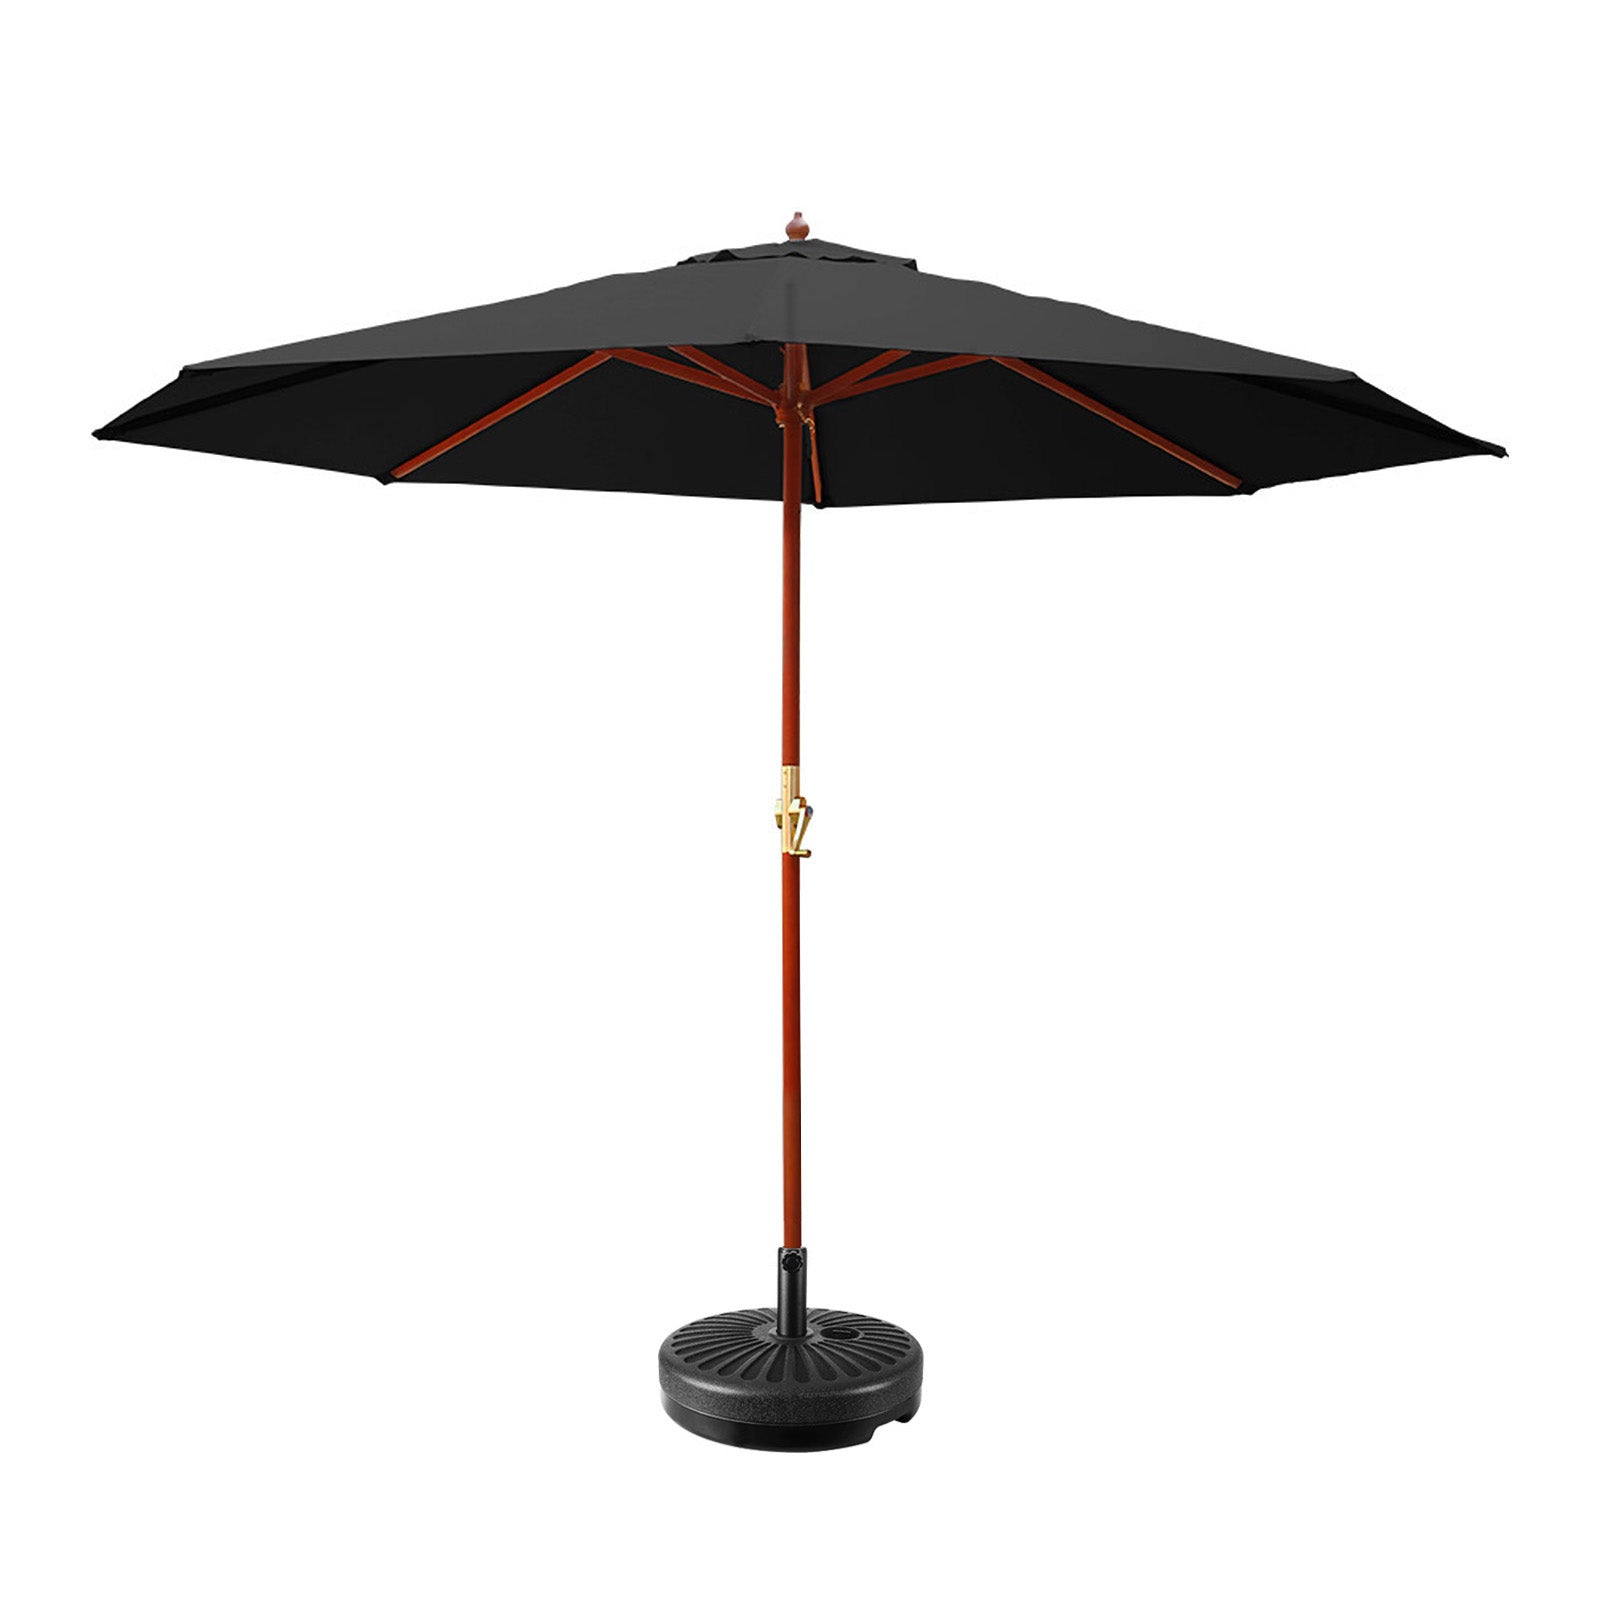 Instahut Outdoor Umbrella 3M with Base Pole Umbrellas Garden Stand Deck Black